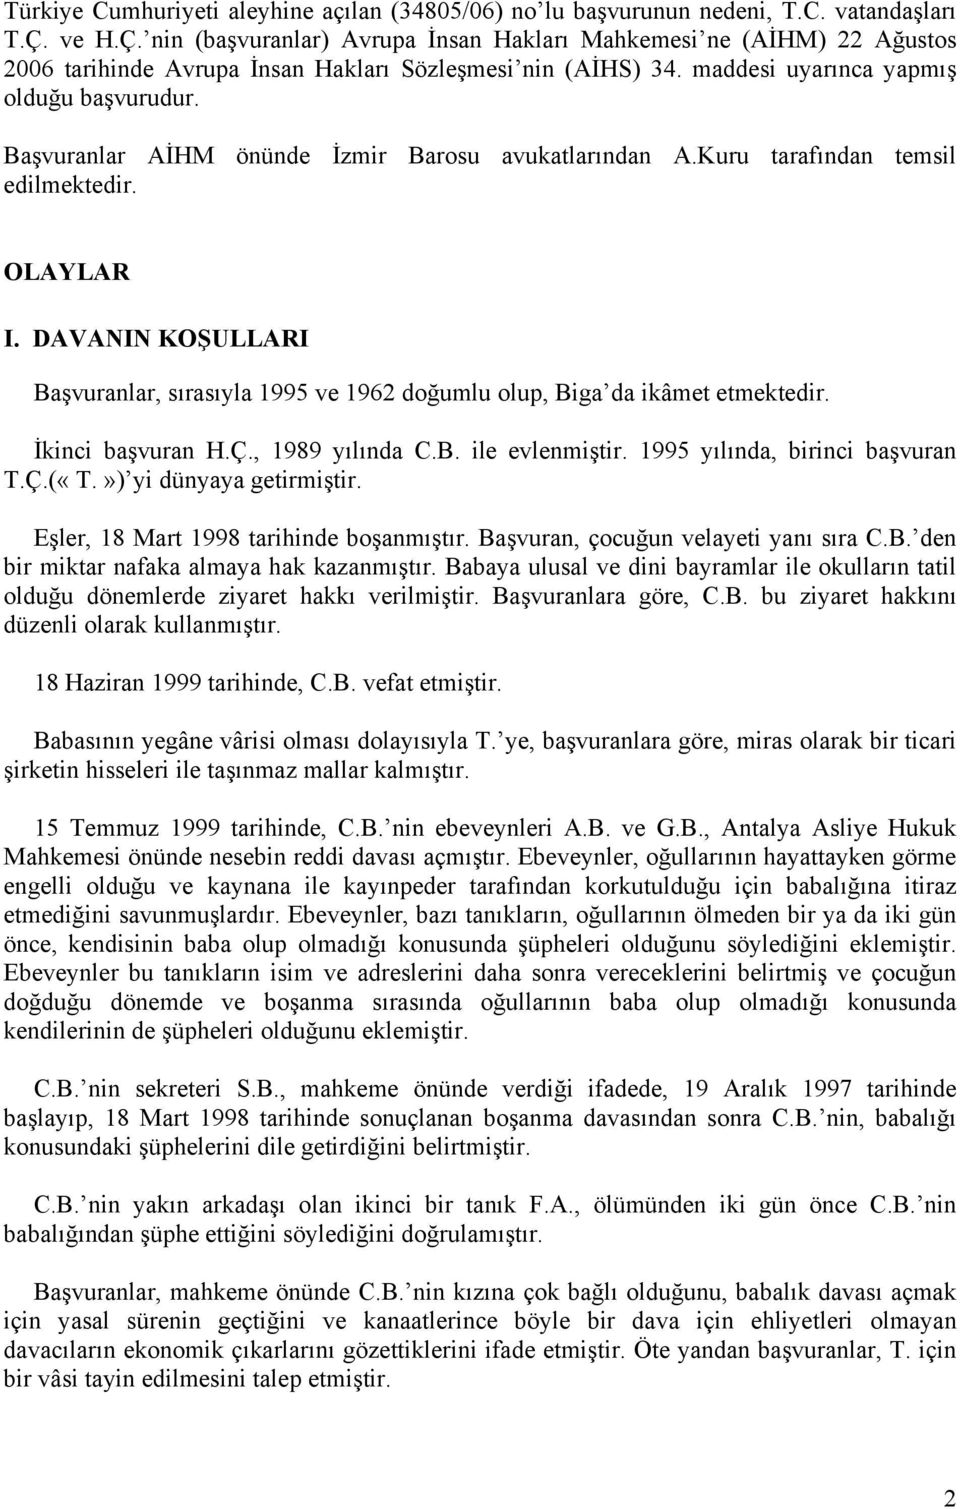 Başvuranlar AİHM önünde İzmir Barosu avukatlarından A.Kuru tarafından temsil edilmektedir. OLAYLAR I. DAVANIN KOŞULLARI Başvuranlar, sırasıyla 1995 ve 1962 doğumlu olup, Biga da ikâmet etmektedir.